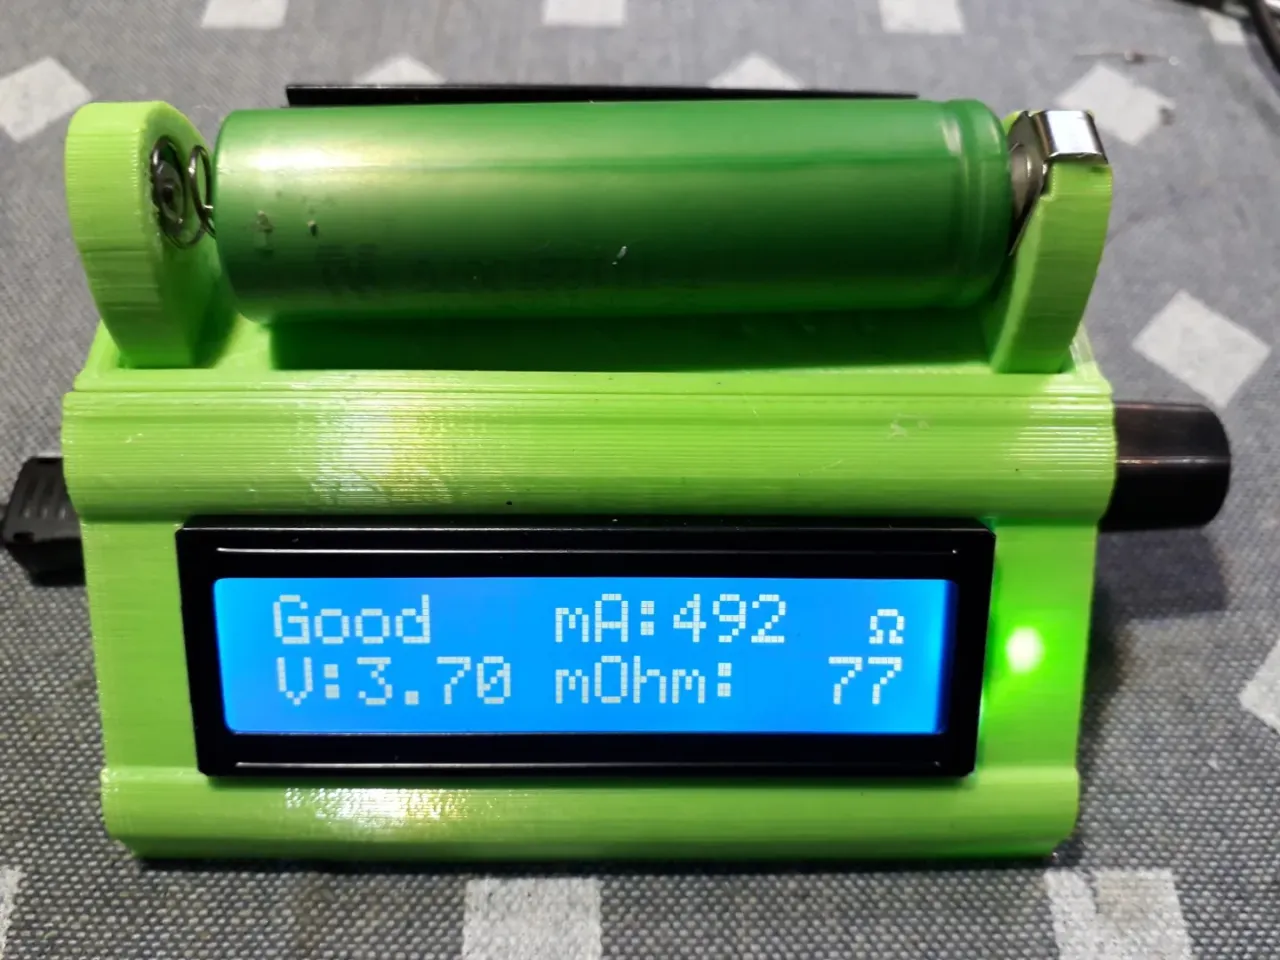 Holder for Black & Decker 20V Lithium Ion Battery by Solomoriah